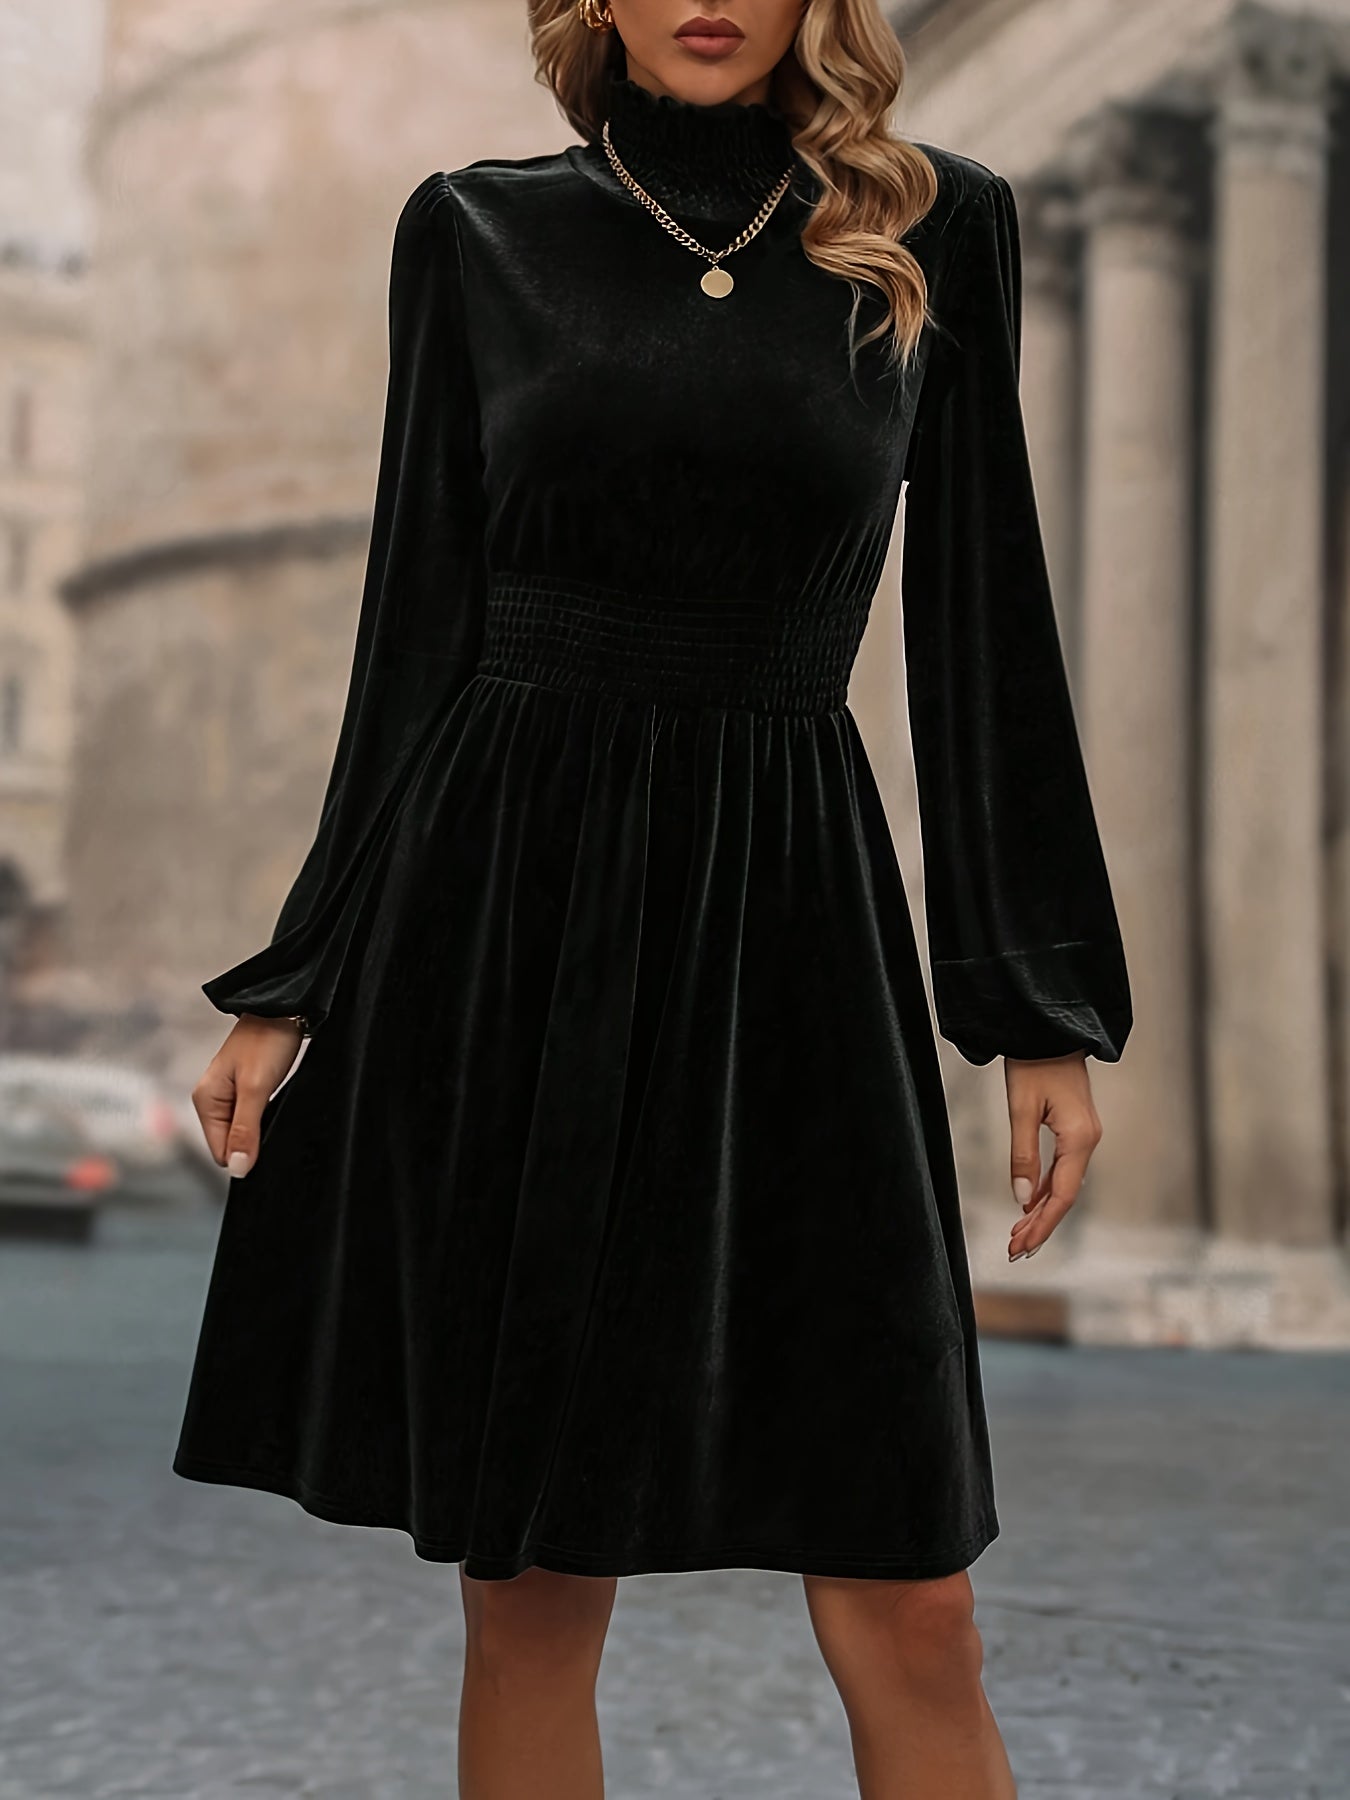 Plus Size Elegant Dress, Women's Plus Solid Velvet Lantern Sleeve High Neck Dress